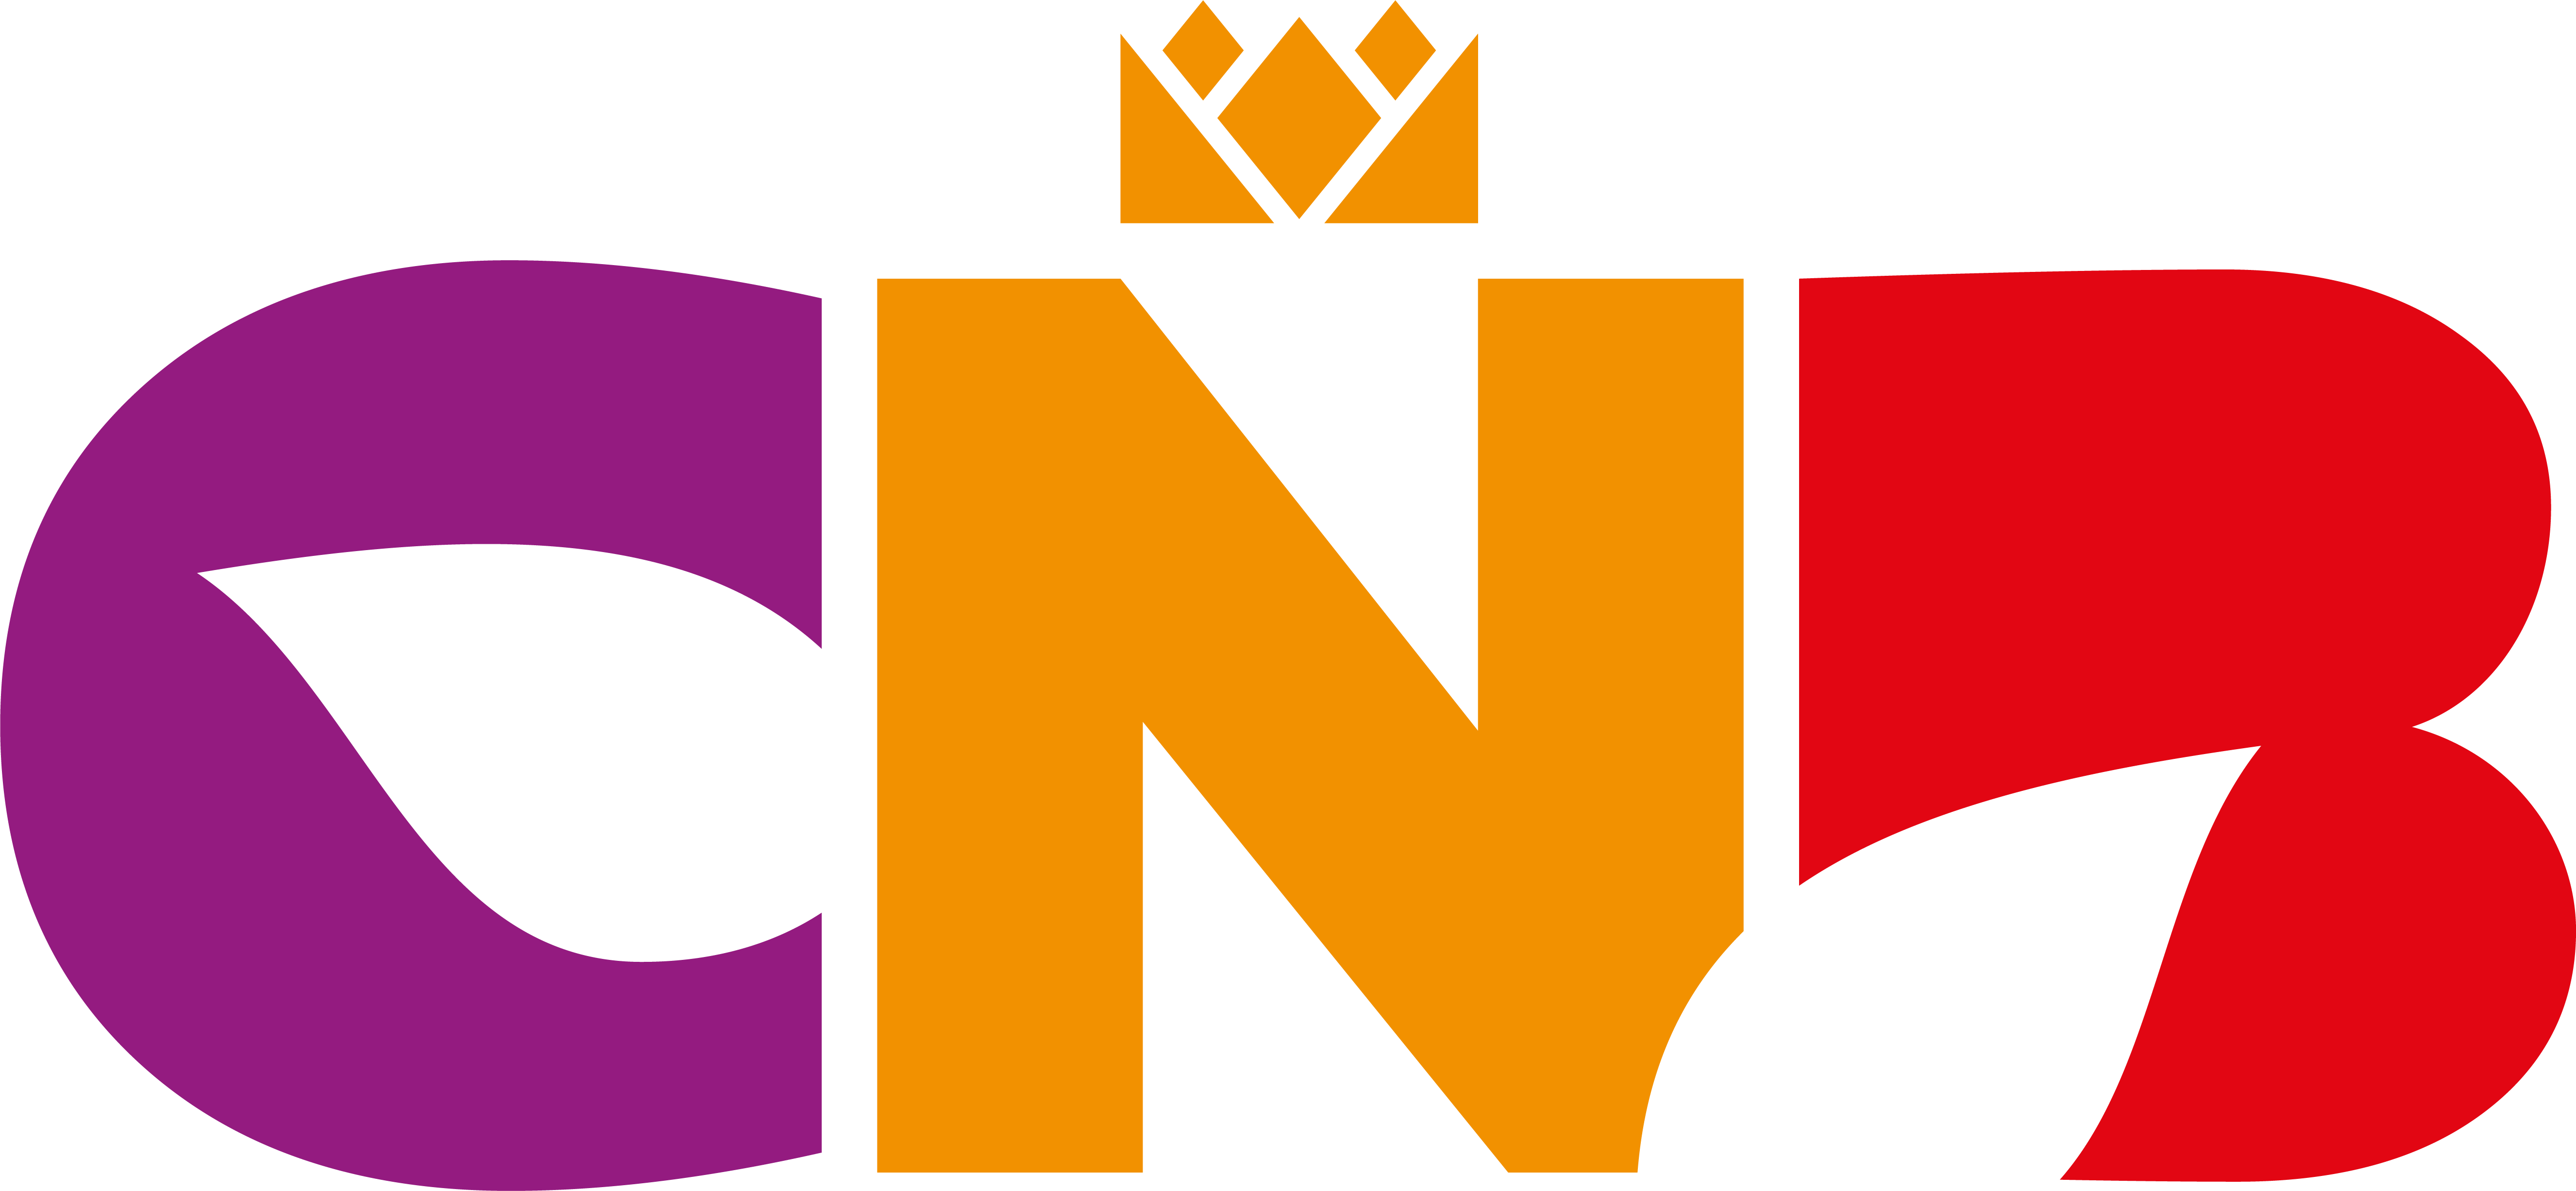 CNB koninklijk logo